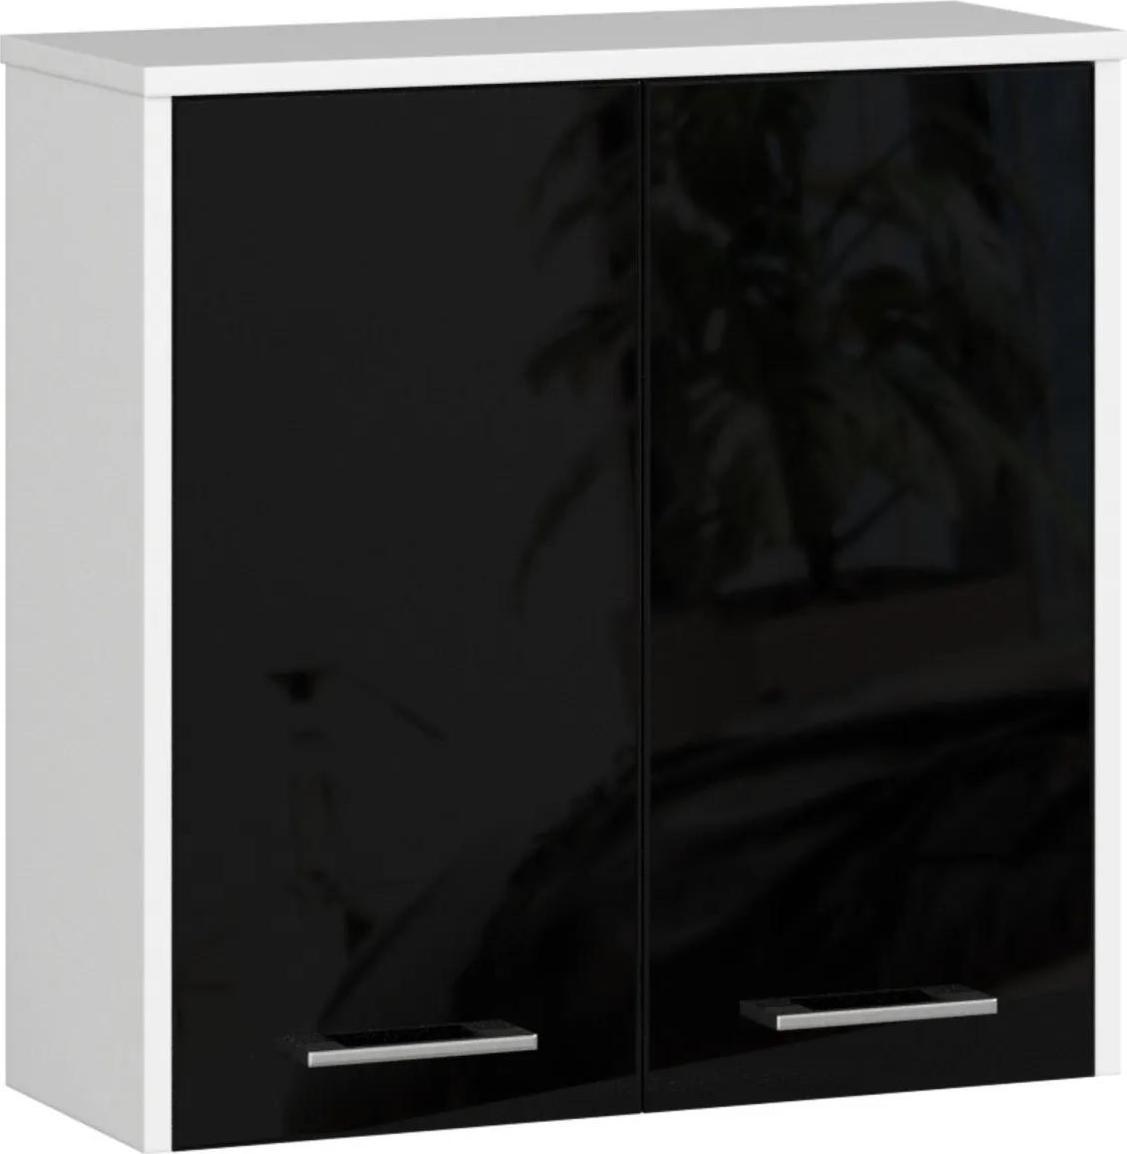 Závěsná koupelnová skříňka Fin 60 cm bílá/černá lesk